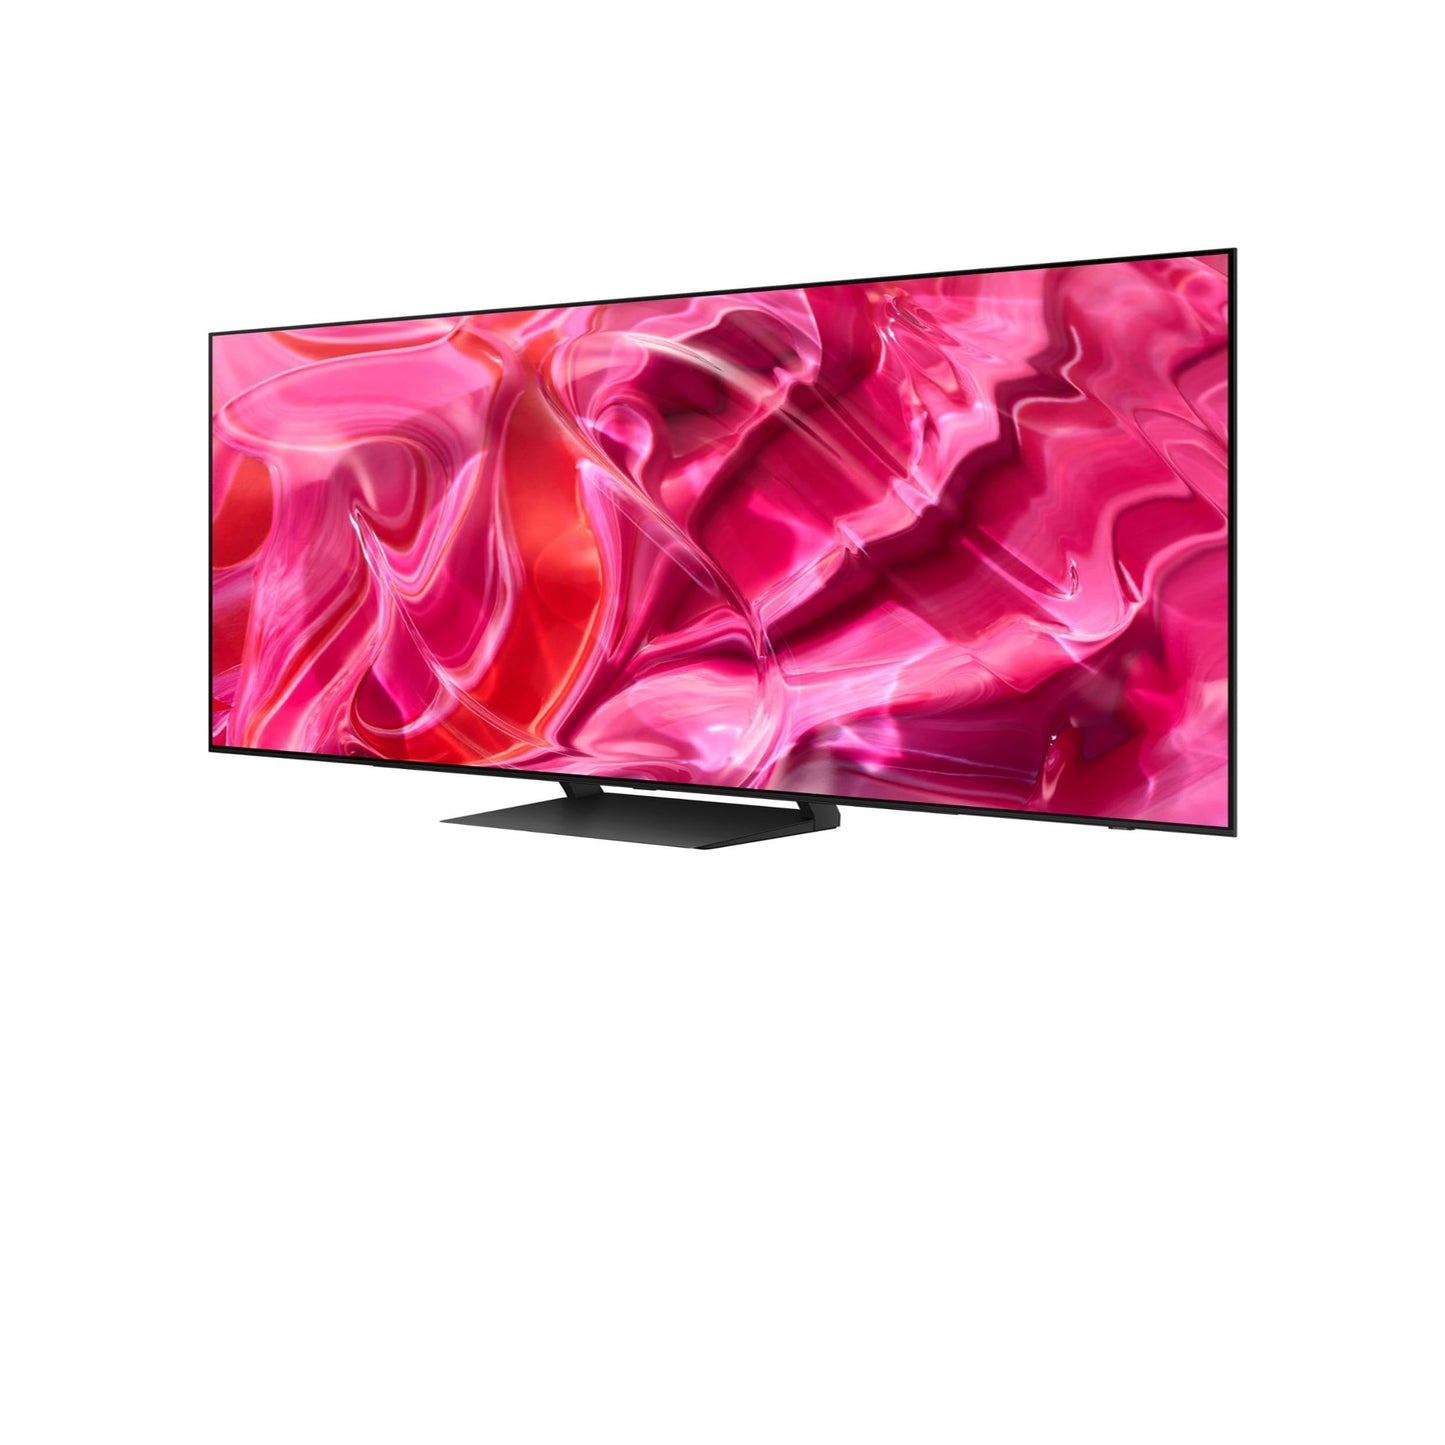 Samsung - تلفزيون ذكي Tizen فئة 77 بوصة S90C OLED 4K UHD 